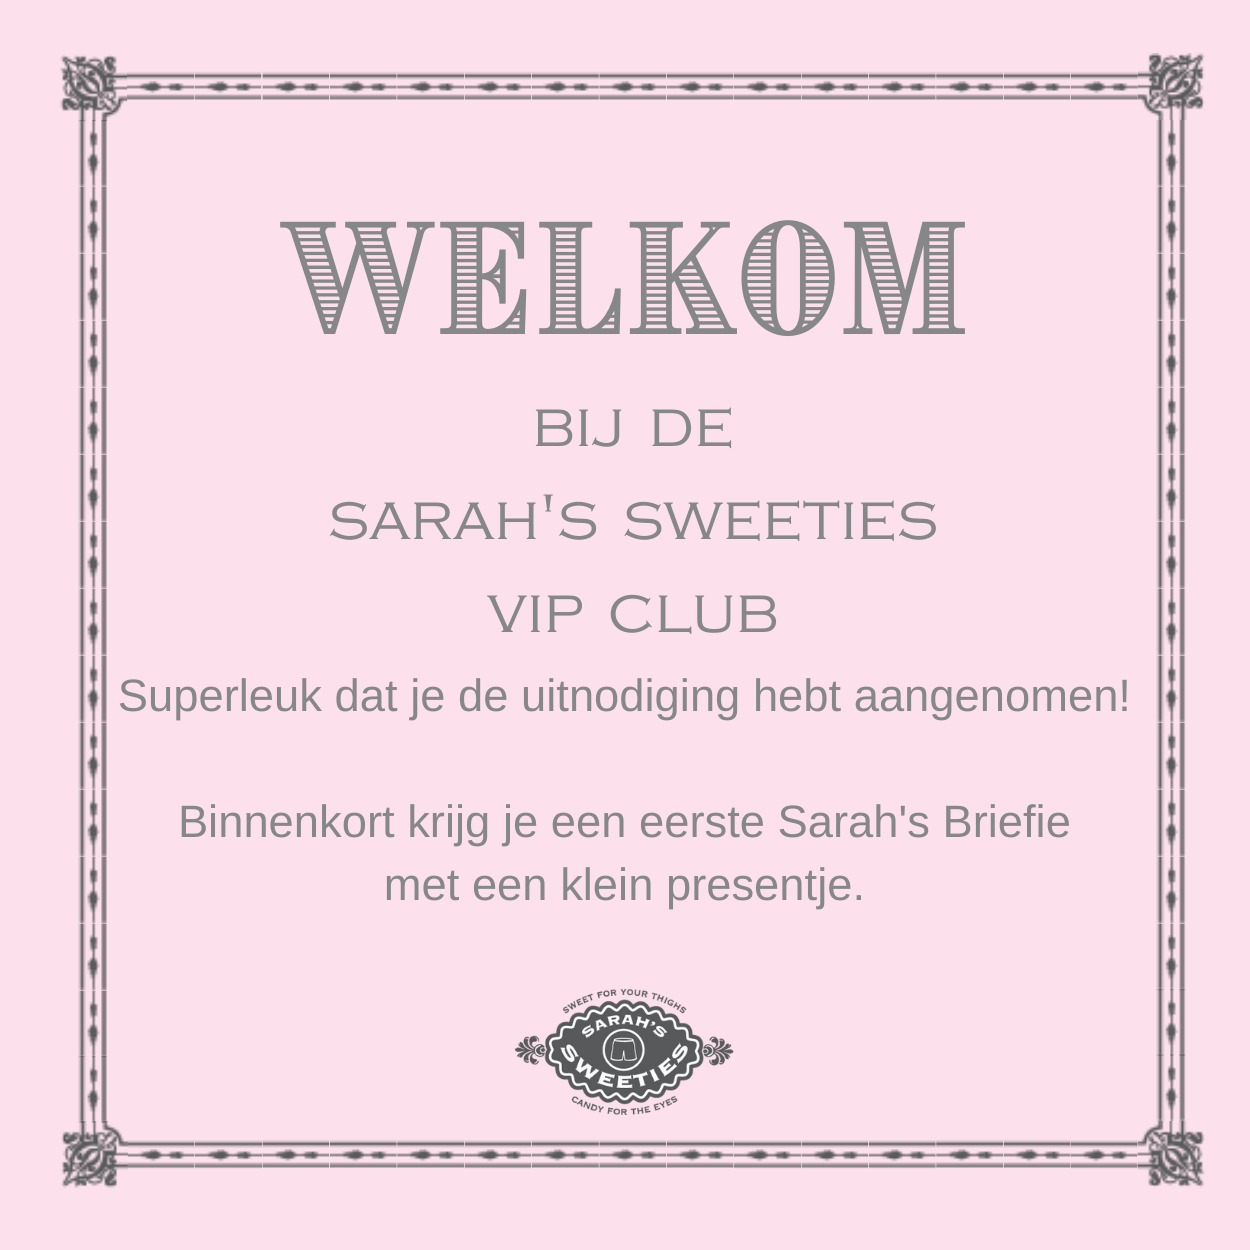 Plaatje met tekst: Welkom bij Sarah's Sweeties VIP Club. Superleuk dat je de uitnodiging hetb aangenomen! Binnenkort krijg je een eerste Briefie met klein presentje. Tekst op lichtroze achtergrond met grijs decoratief kader eromheen.